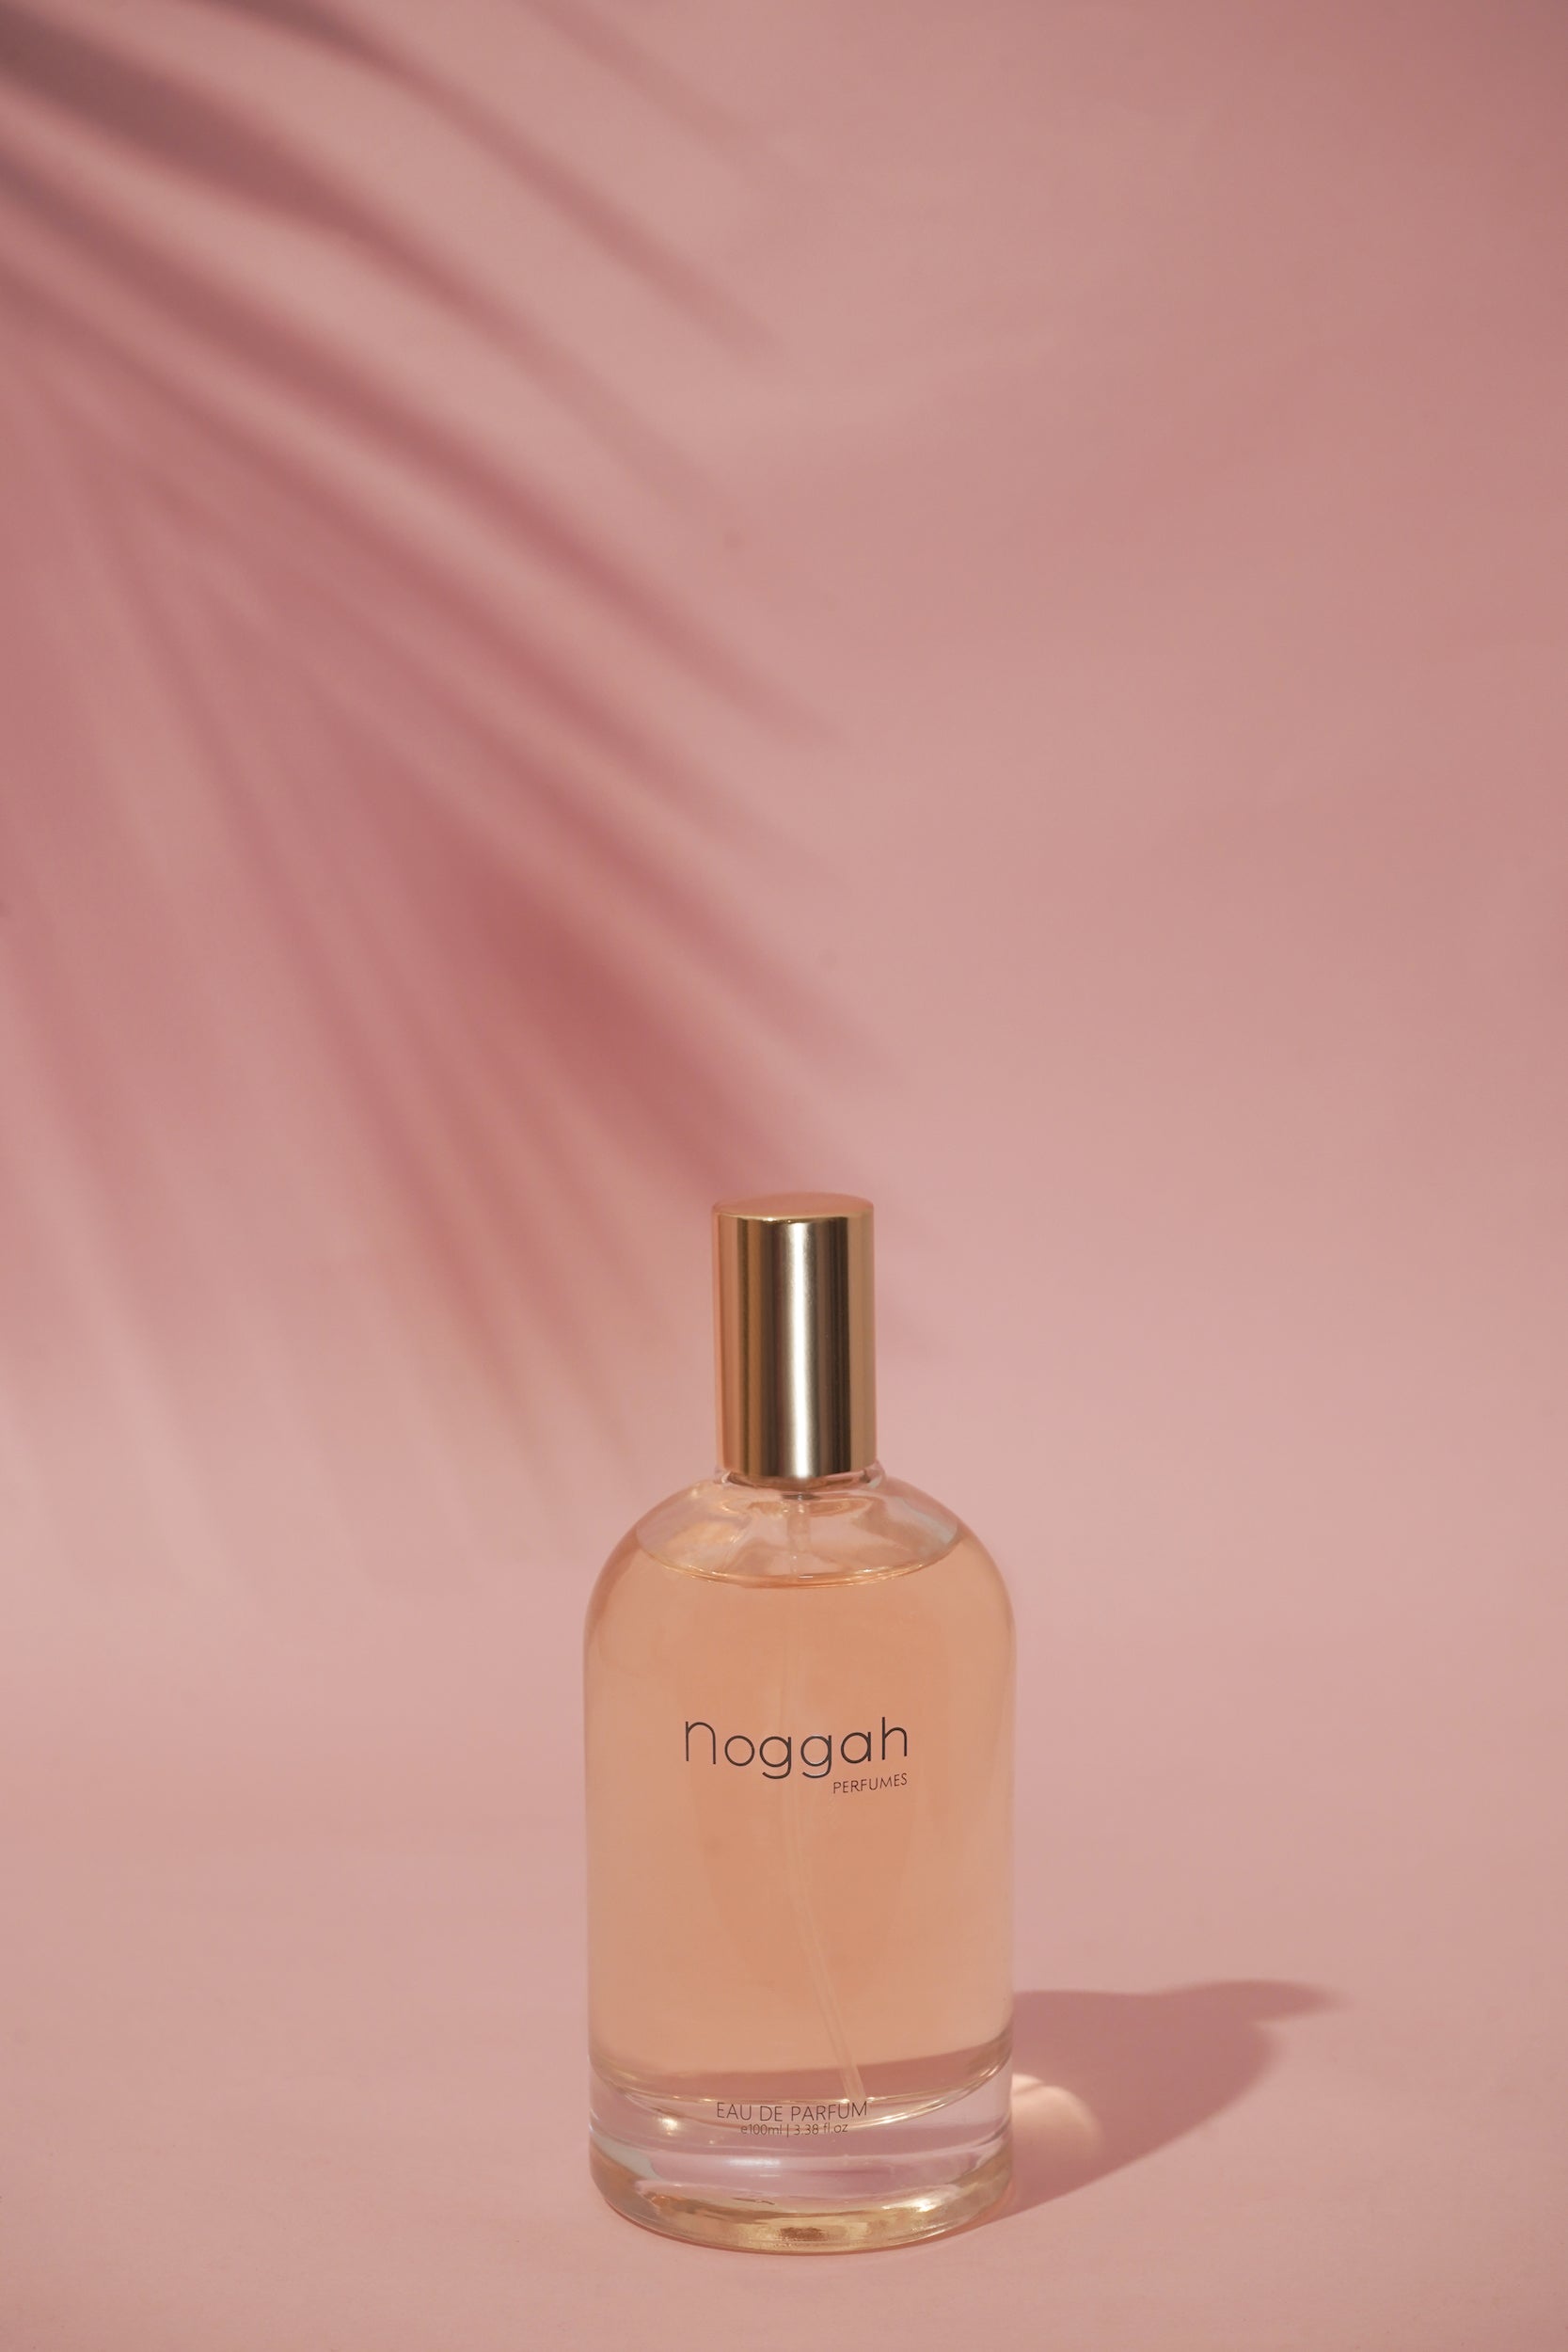 Panache for Men  Eau De Parfum e100ml – Noggah Perfumes